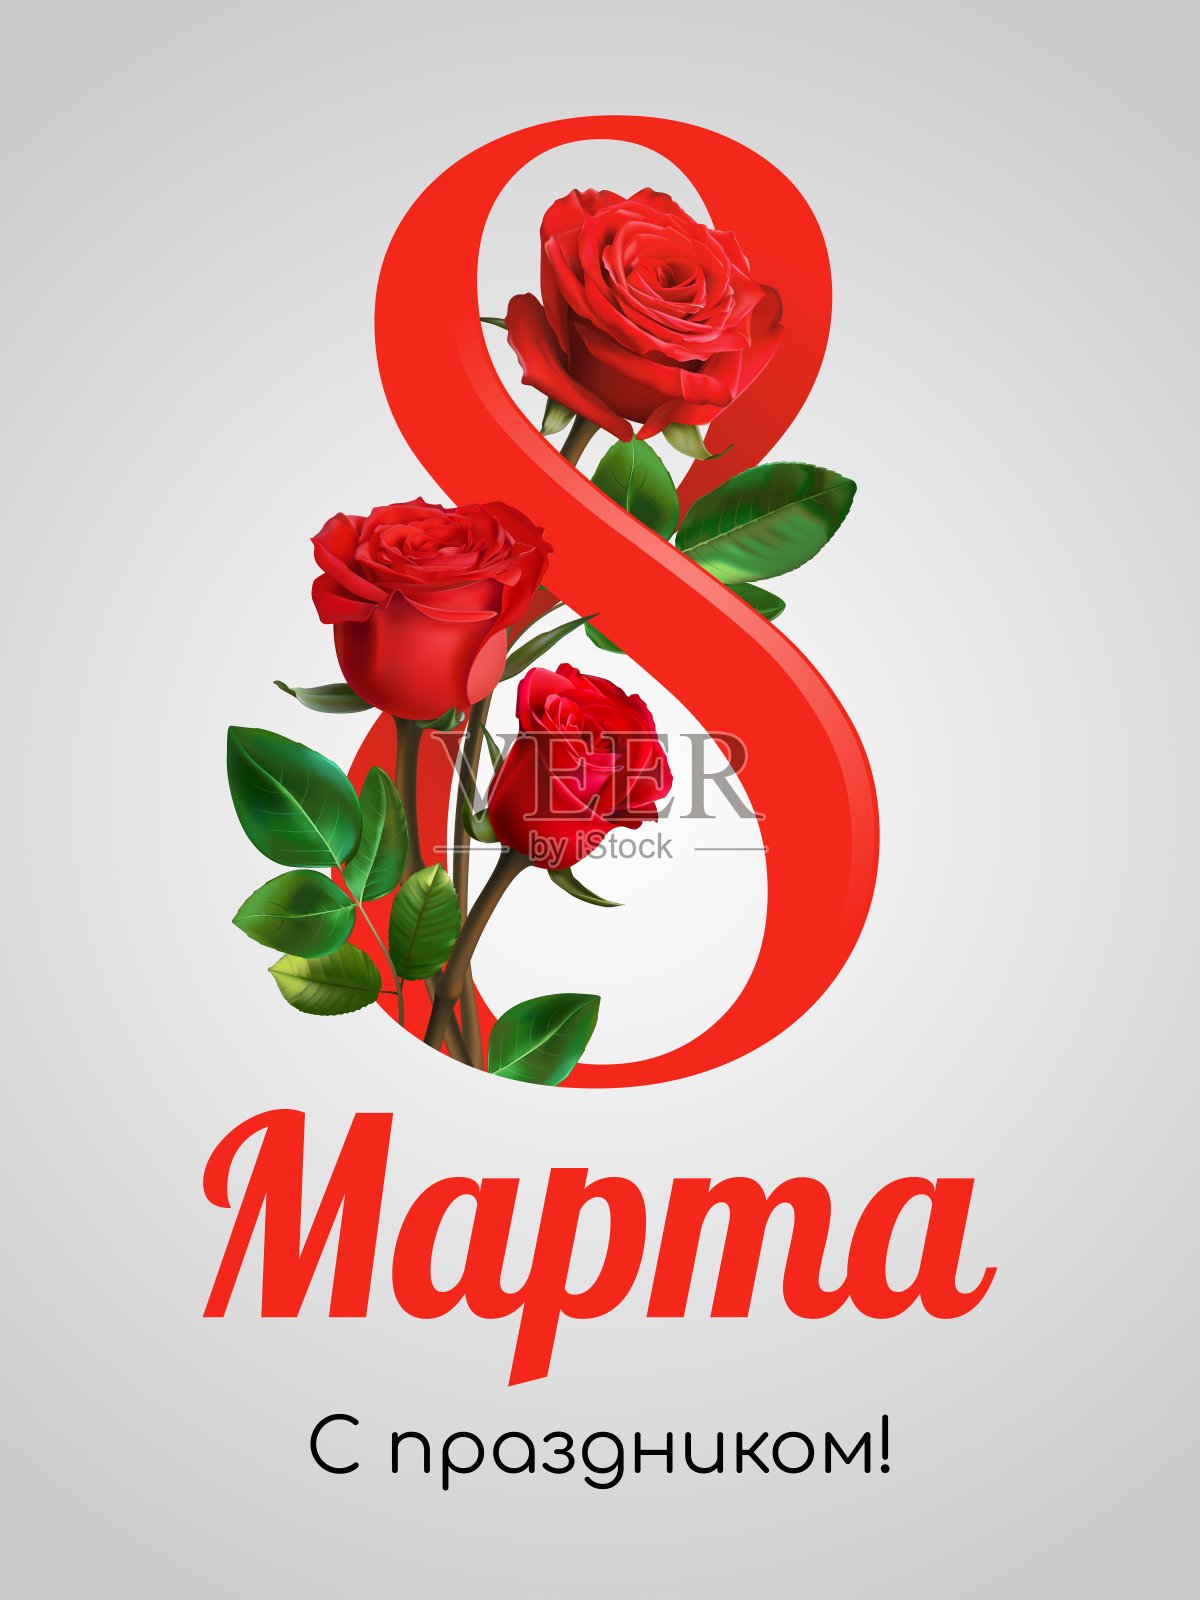 妇女节贺卡模板俄文- 3月8日节日快乐!。水彩样式与文本。红色的花。玫瑰孤立在光背景。设计模板素材